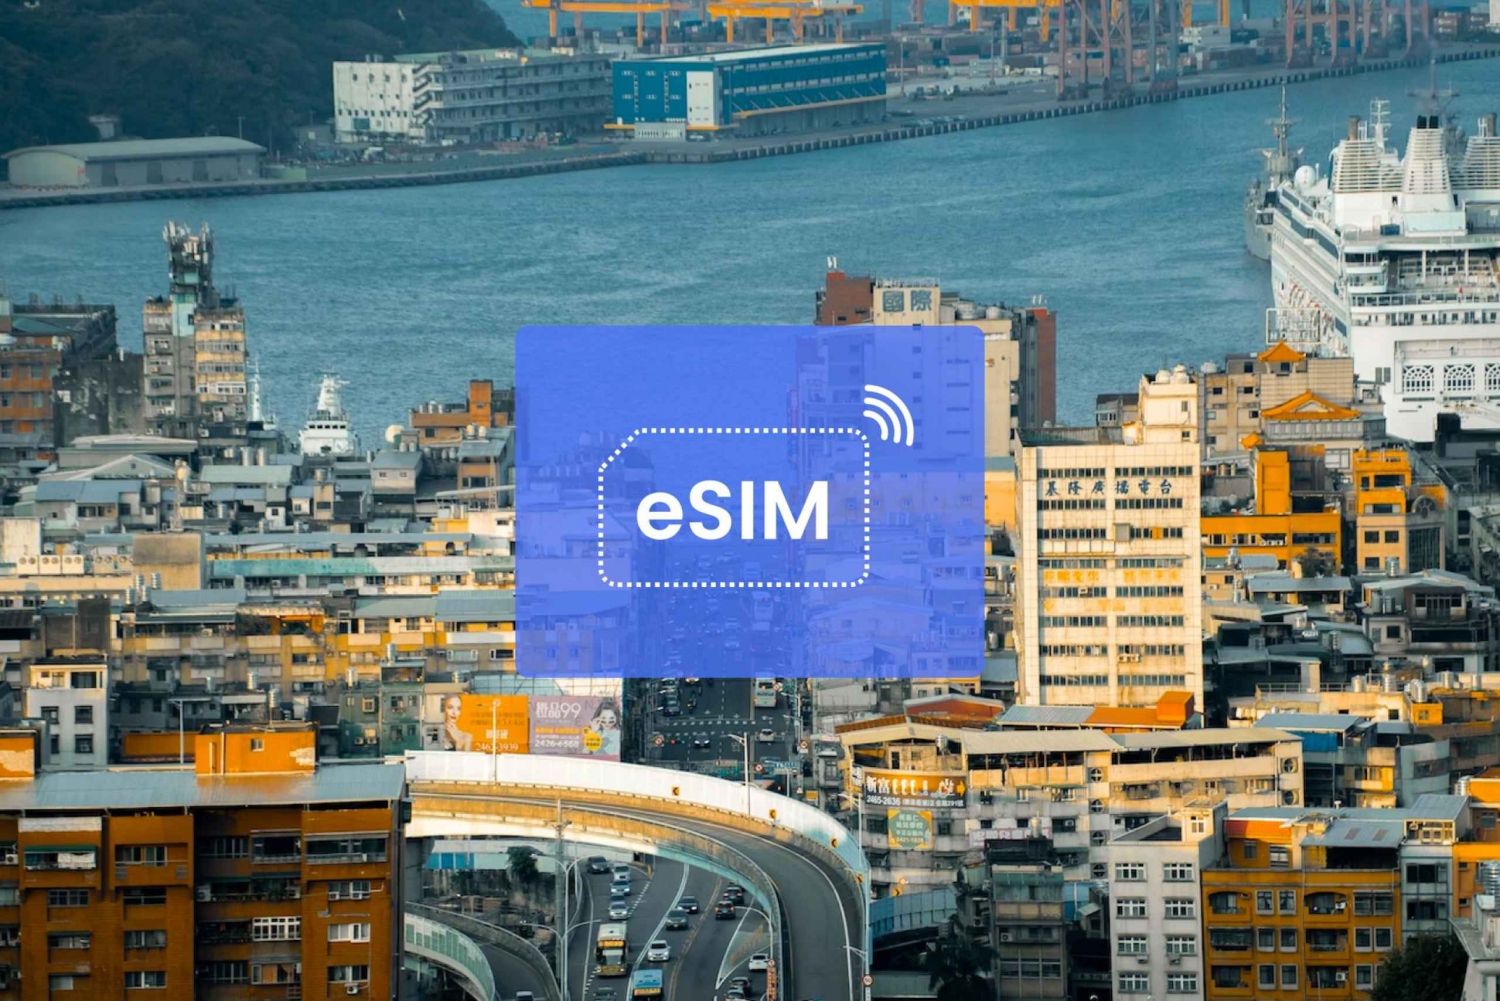 Keelung: Taiwan/ Aasia eSIM-verkkovierailu Mobiilidatapaketti: Taiwan/ Aasia eSIM-verkkovierailu Mobile Data Plan